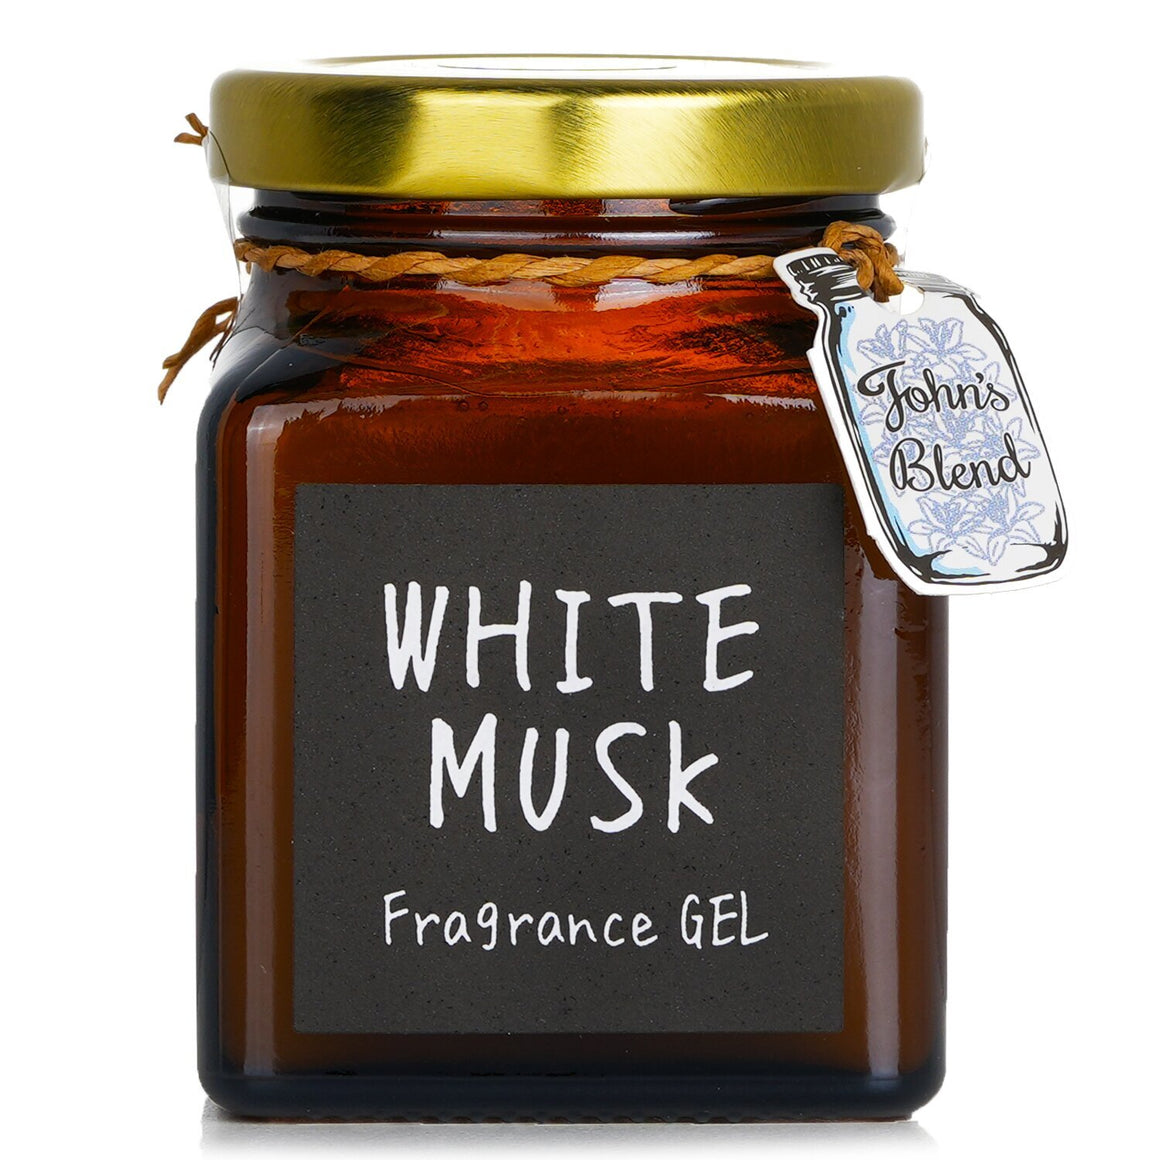 JOHN'S BLEND Fragrance Gel- White Musk (135g)